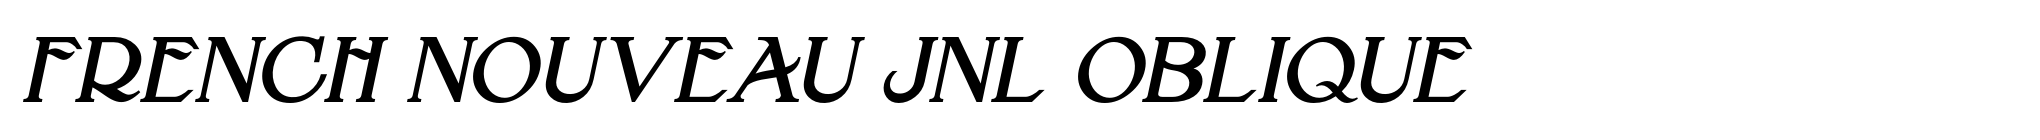 French Nouveau JNL Oblique image